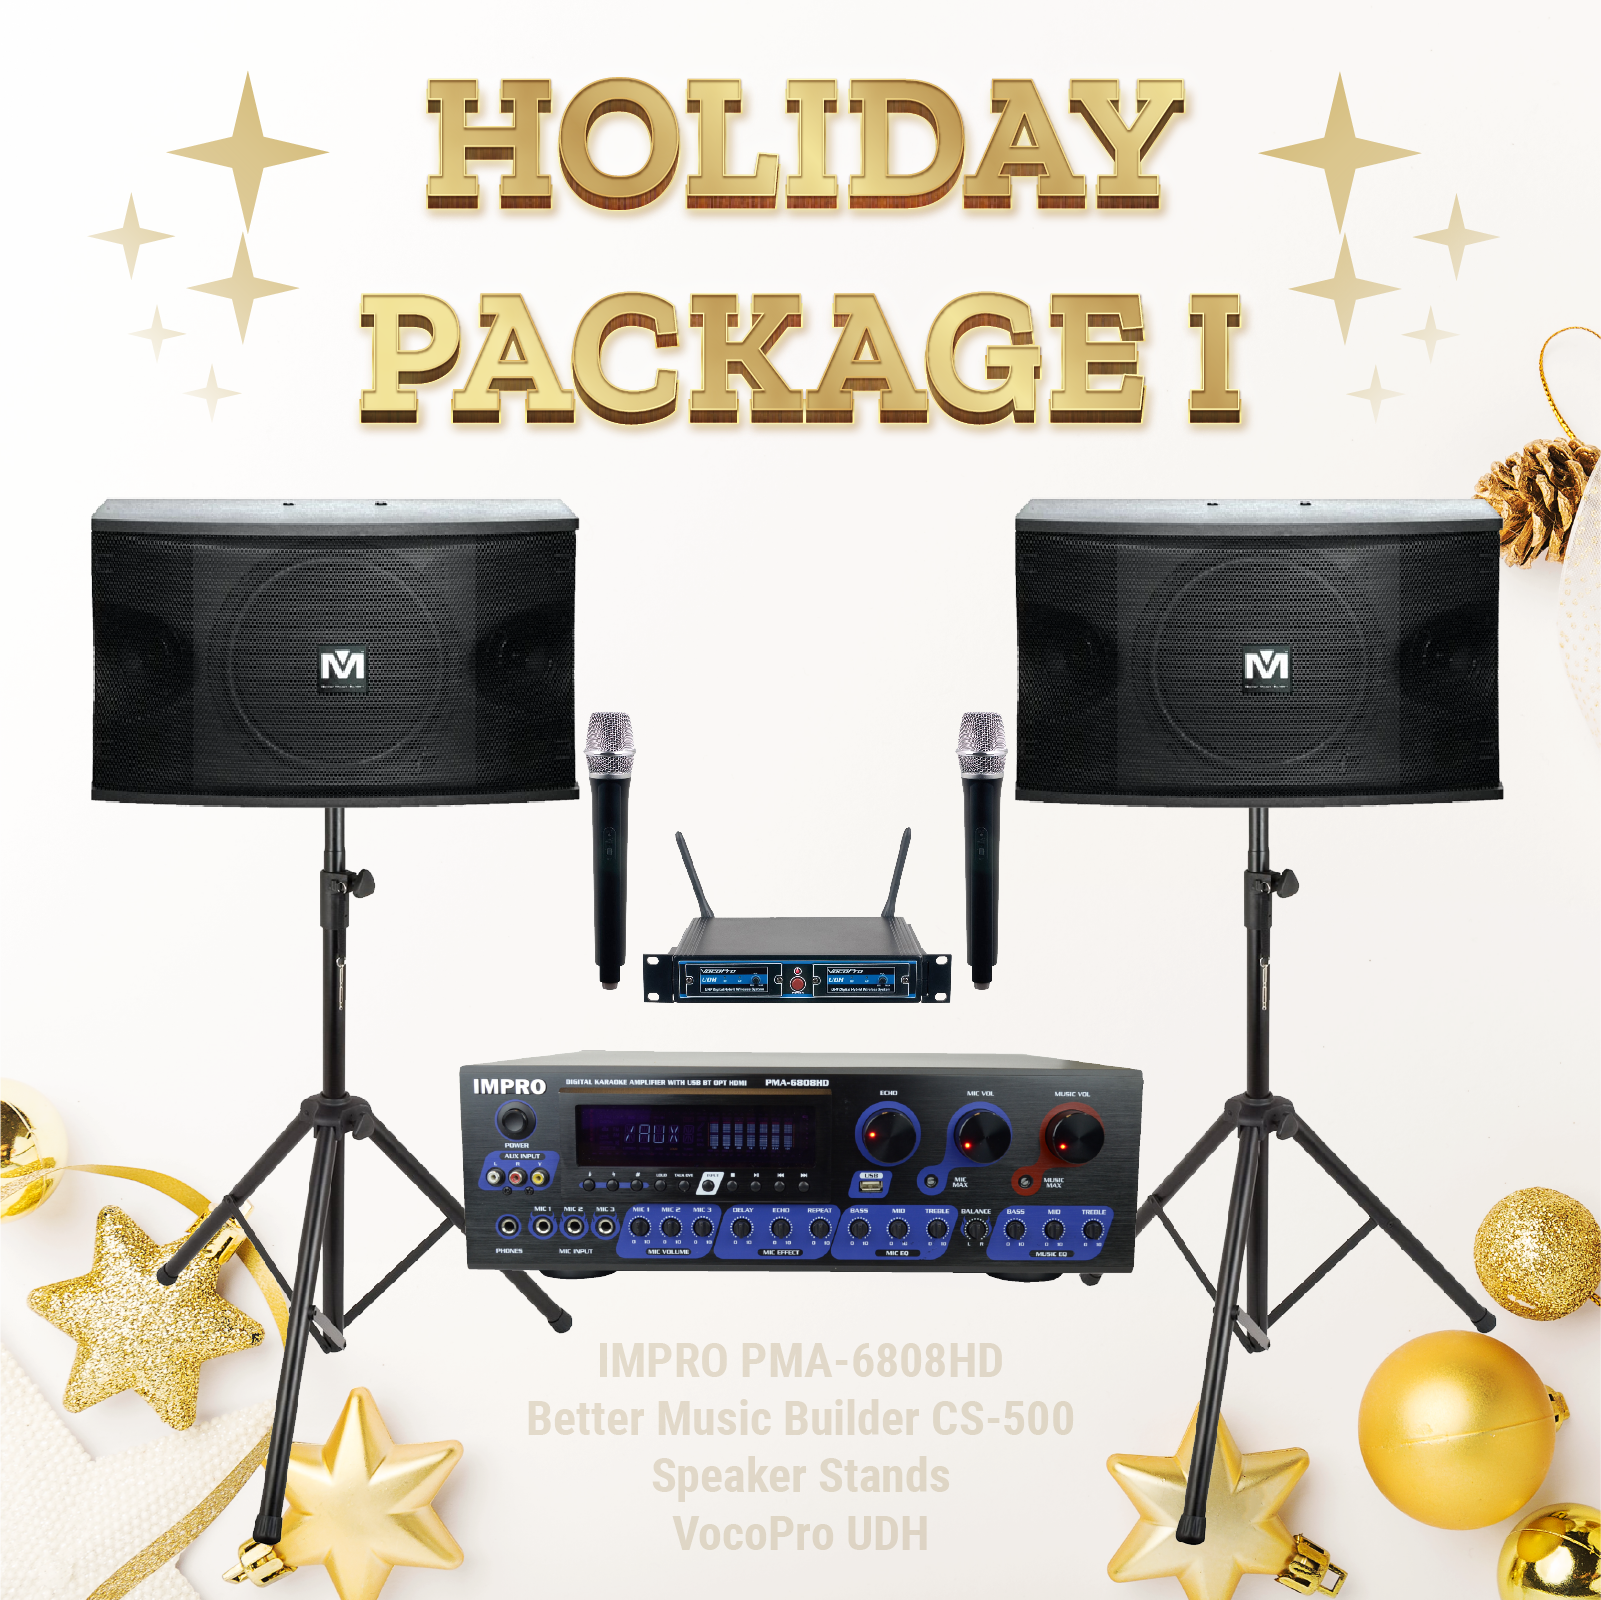 Gói kỳ nghỉ #01: ImPro PMA-6808HD + Chân đế + BetterMusicBuilder CS-500 + Hệ thống micrô VocoPro